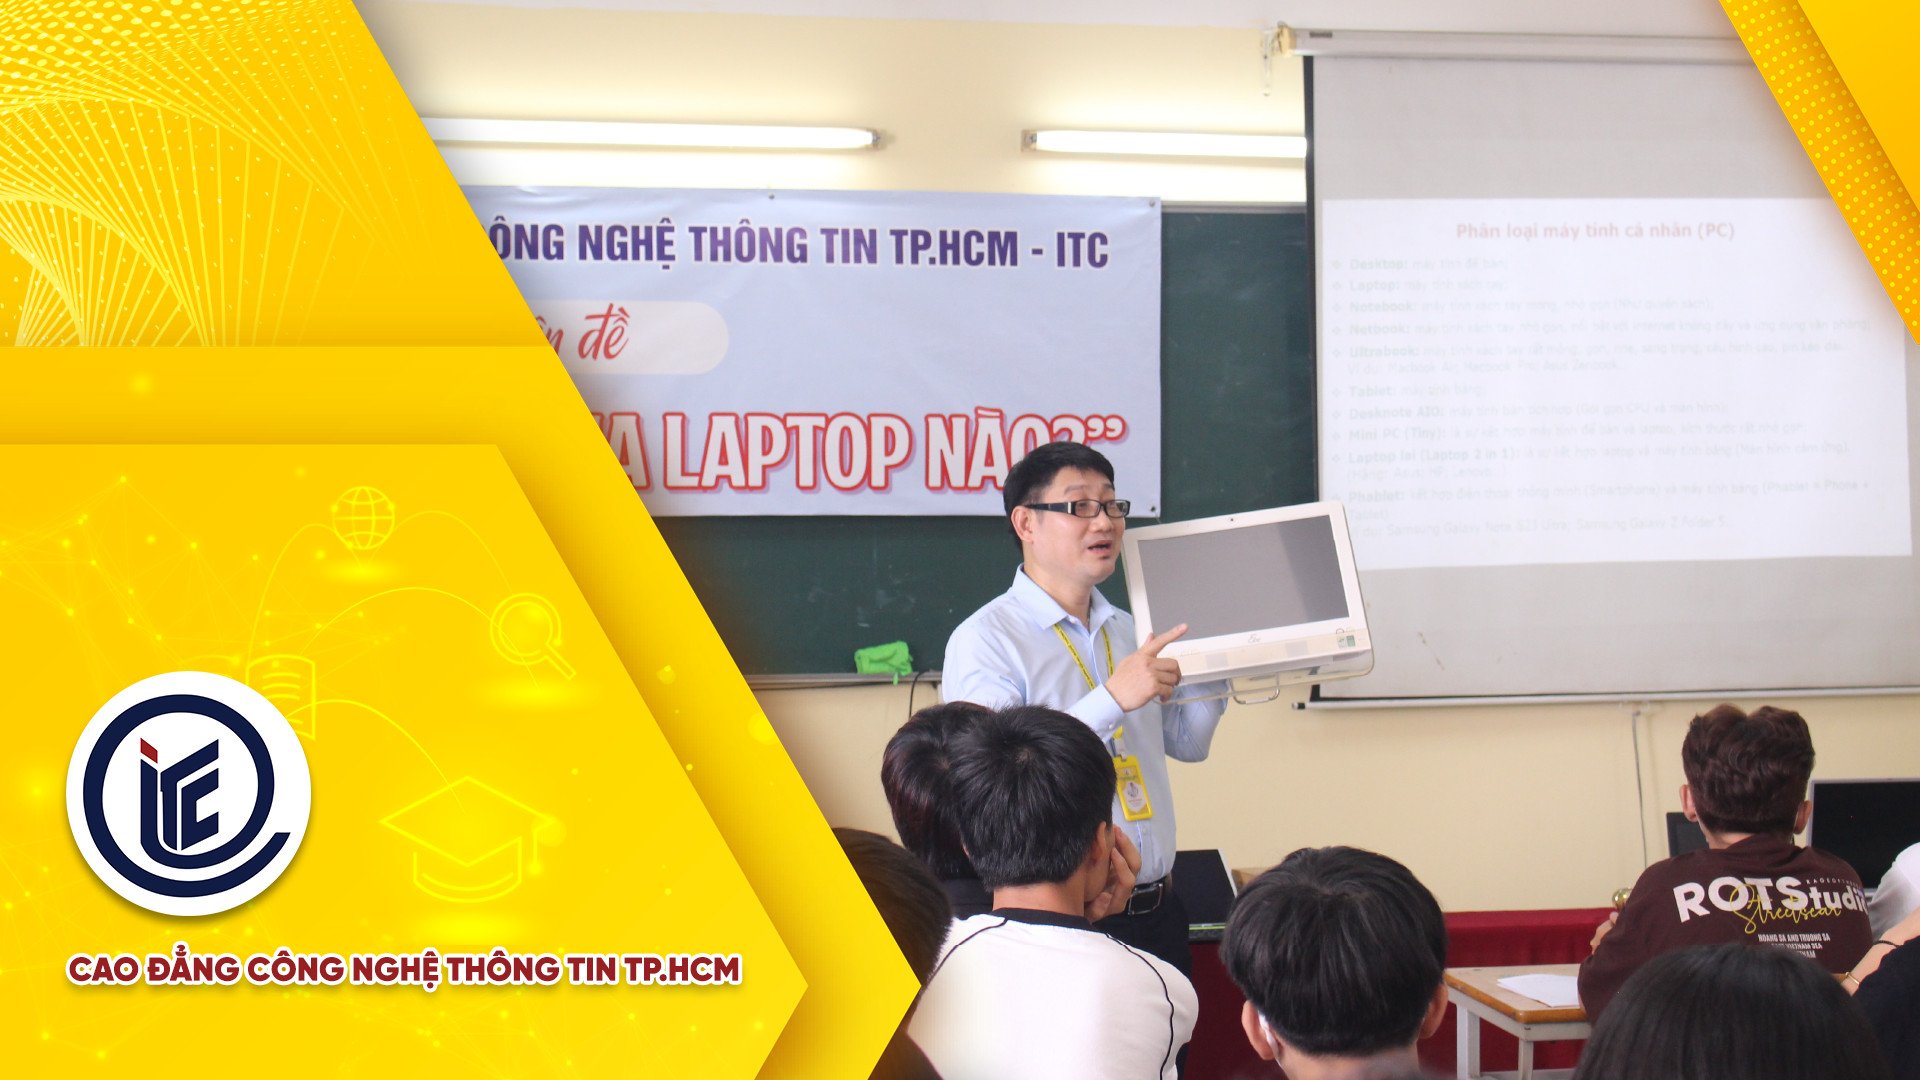 Toàn cảnh chương trình "ITC đồng hành cùng sinh viên" với chủ đề: "Học ngành gì, mua laptop nào?"